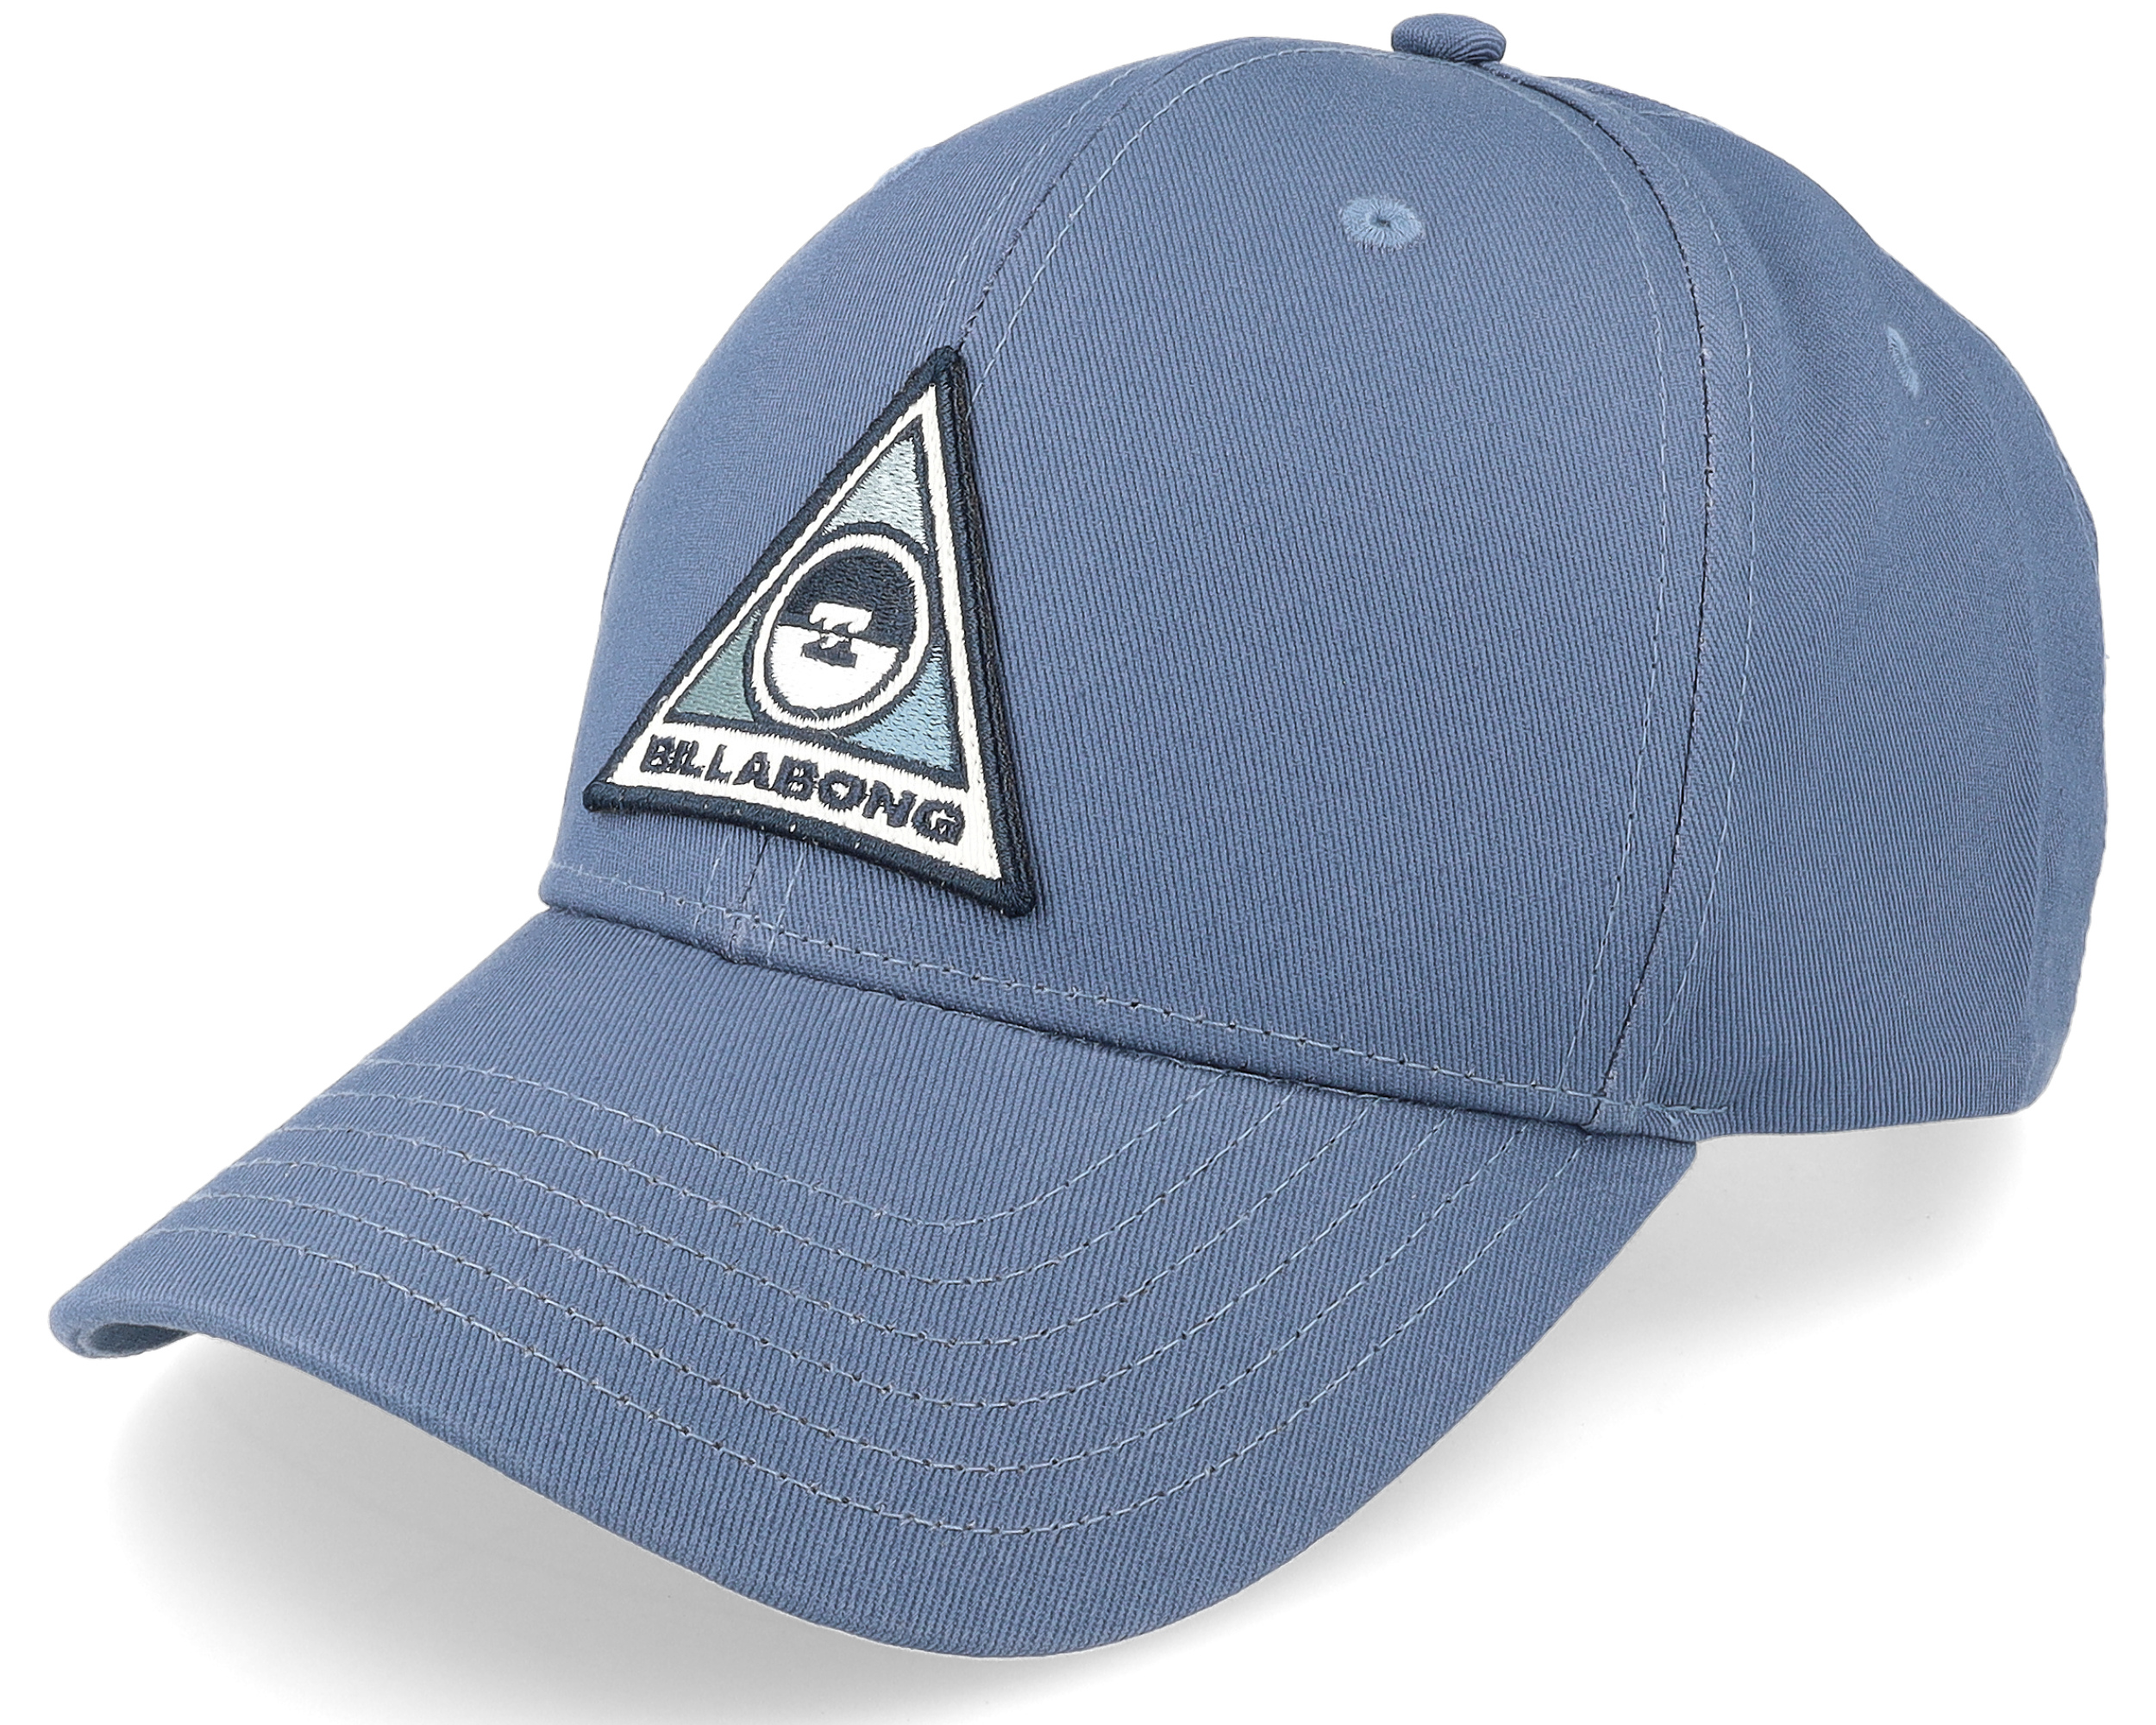 Adjustable Billabong Blue - Walled Washed cap